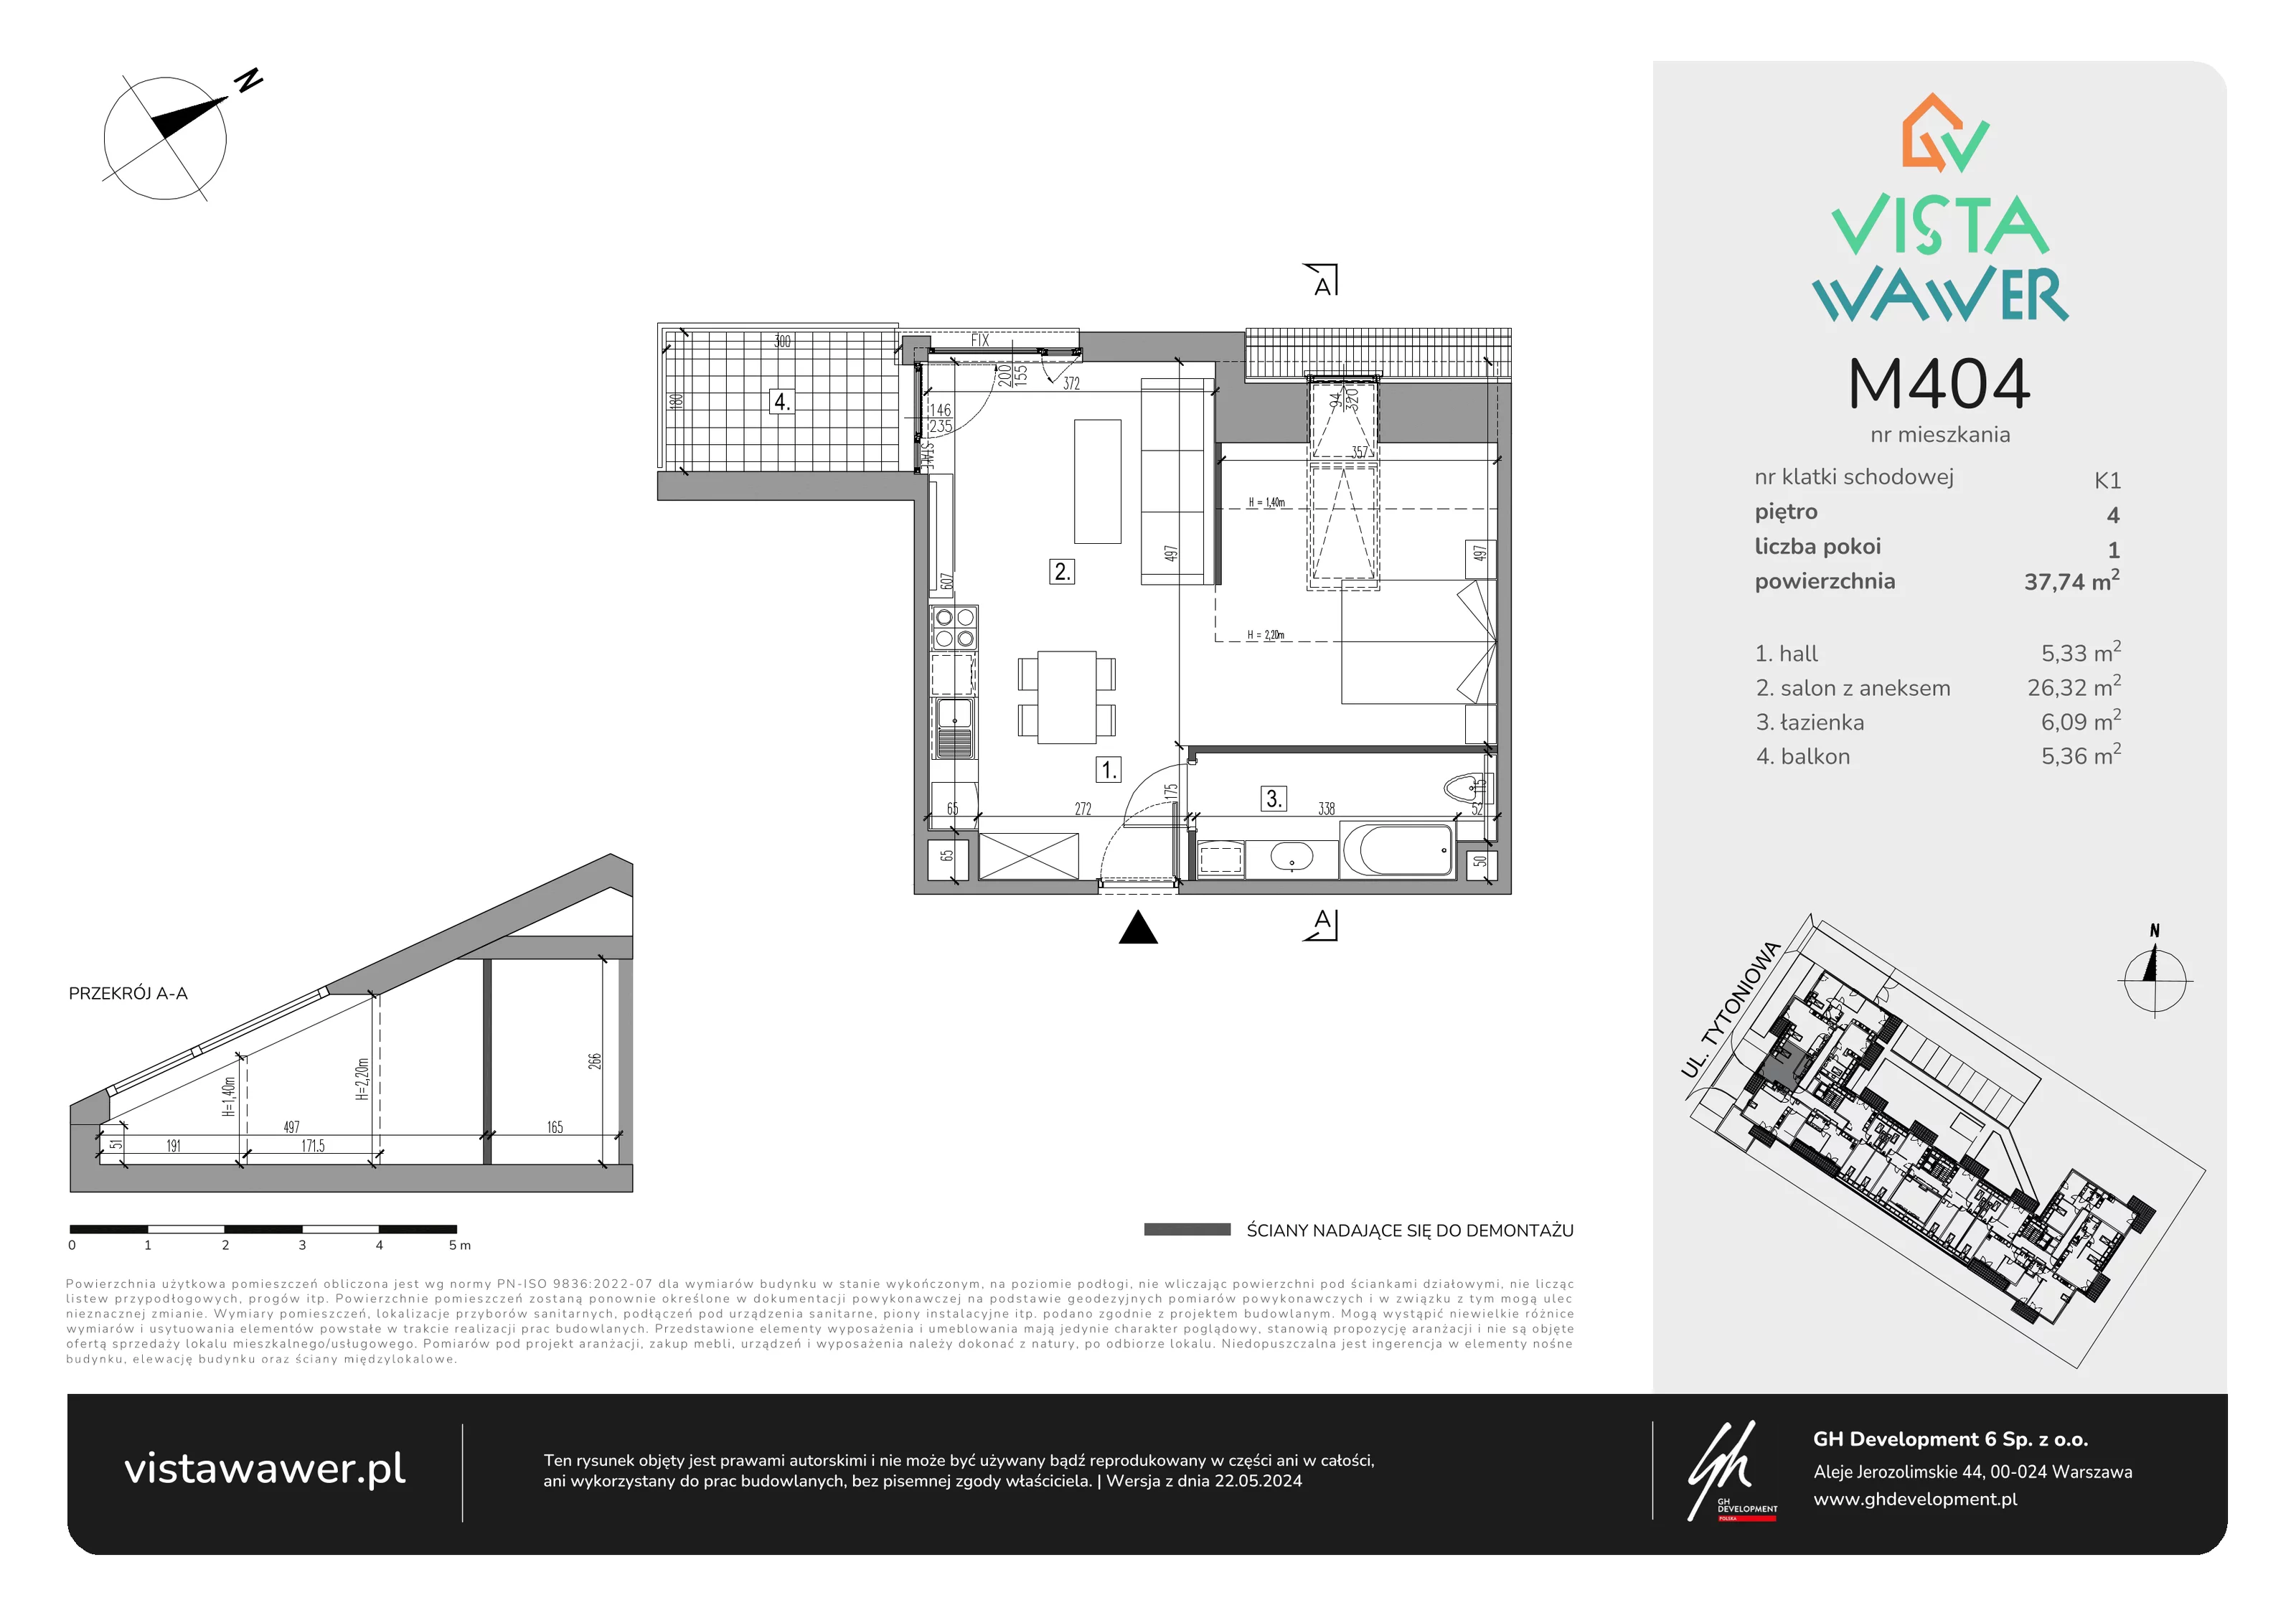 Mieszkanie 37,74 m², piętro 4, oferta nr M404, Vista Wawer, Warszawa, Wawer, Gocławek, ul. Tytoniowa 20